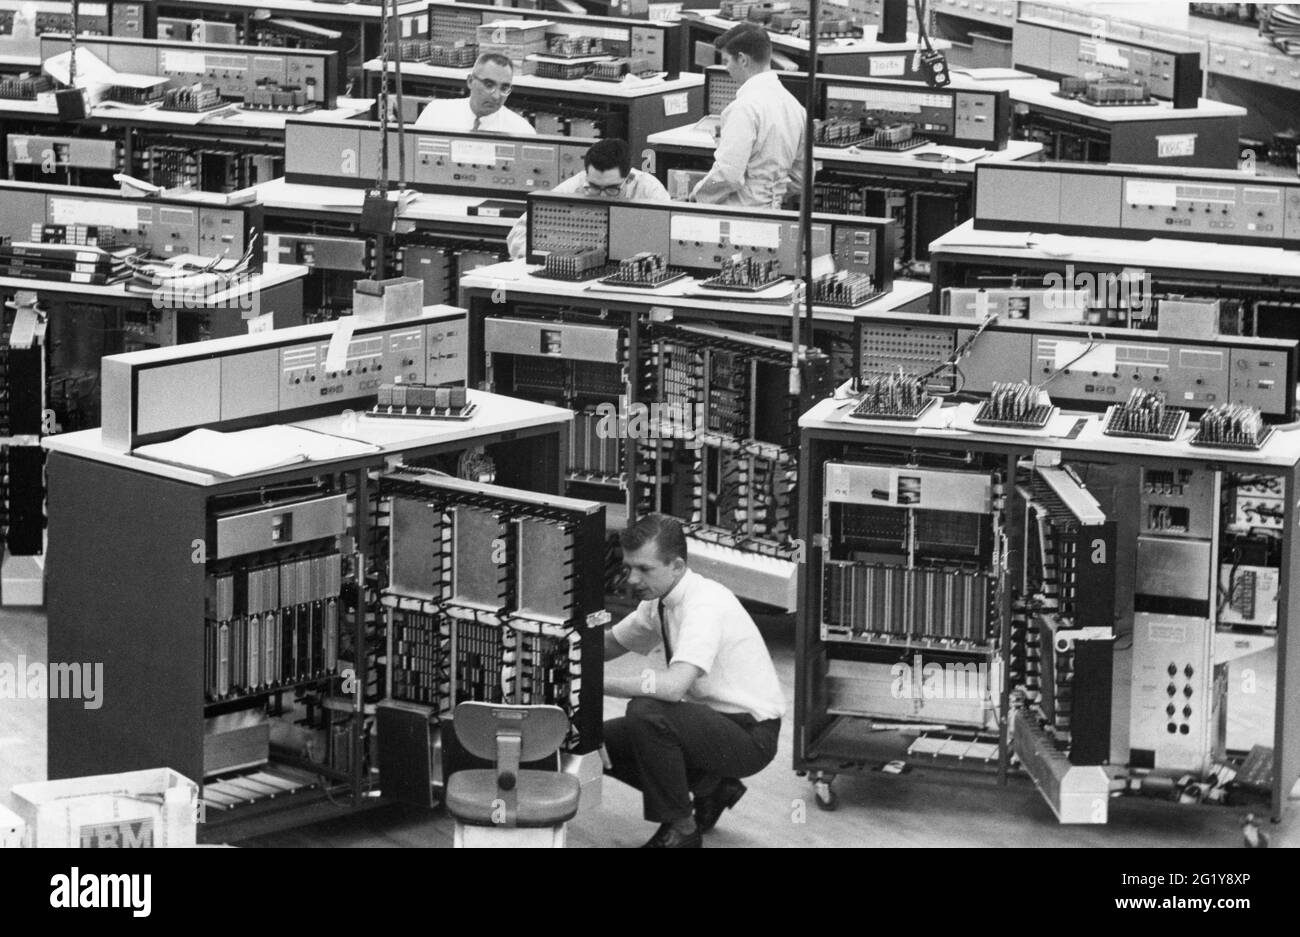 IBM System/360 Model 20 Computer - hier im Werk in Endtests - sind der kleinste Computer seiner Art, der die Leistung und Vielseitigkeit eines Stored-Program-Computers mit hervorragenden Funktionen zur Handhabung von Lochkarten bietet, San Jose, CA, 4/15/1966. (Foto von IBM/RBM Vintage Images) Stockfoto